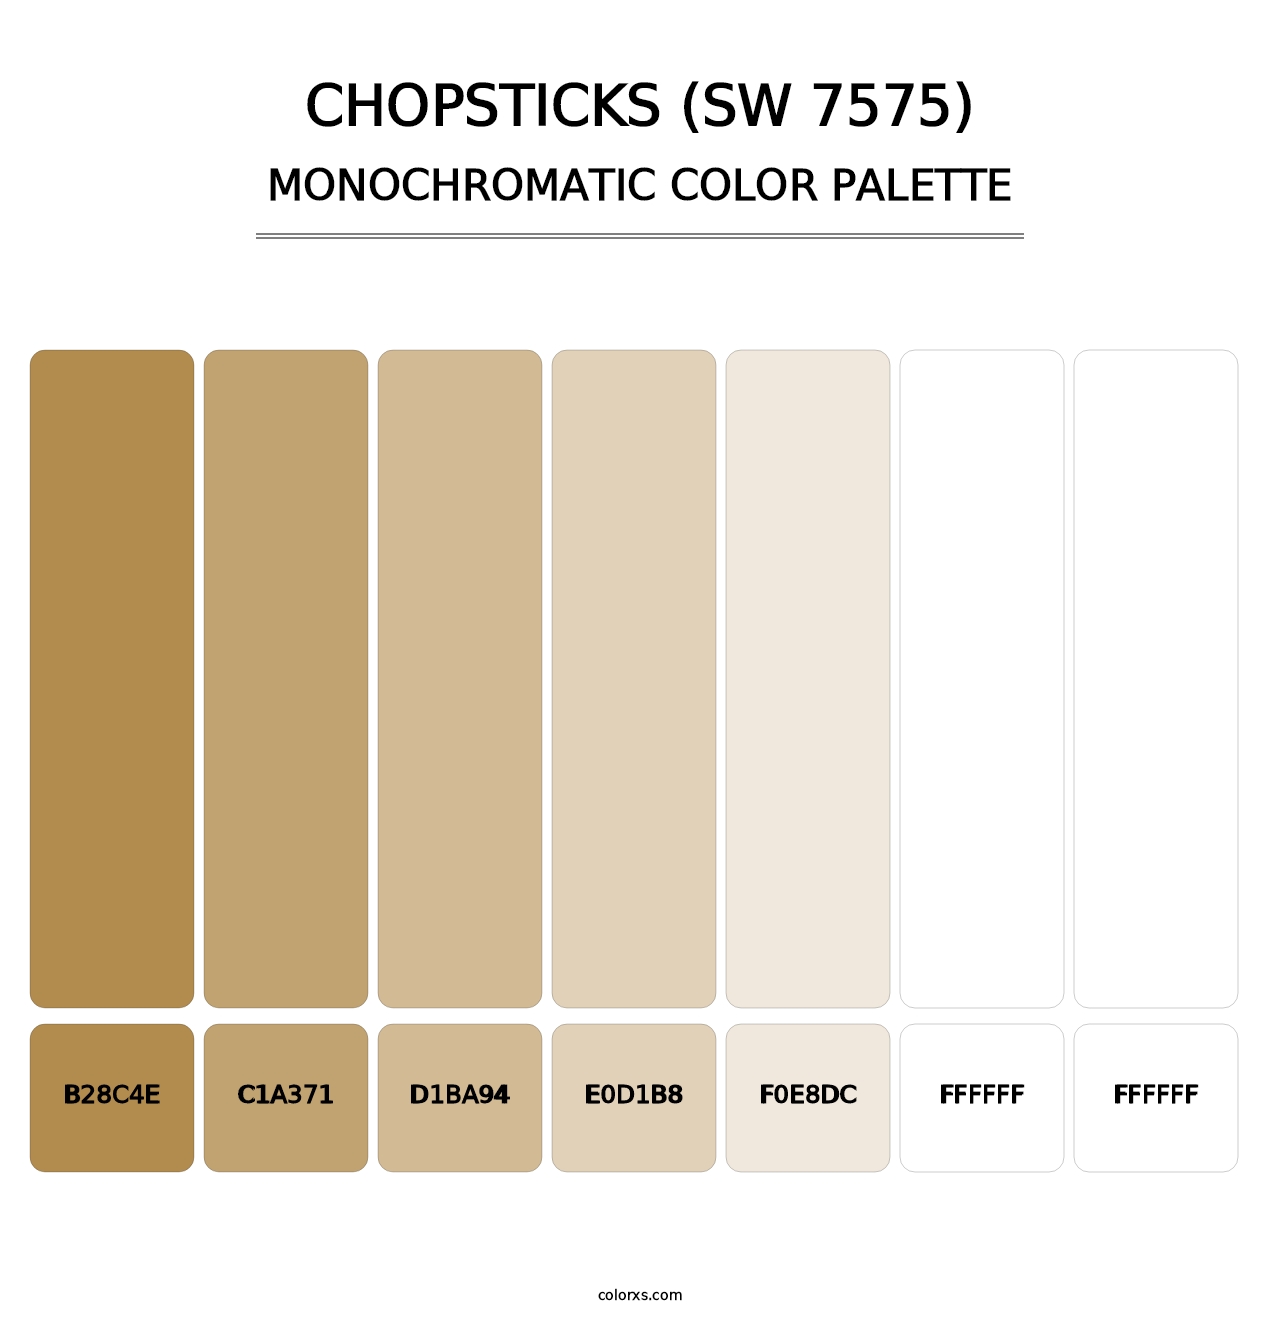 Chopsticks (SW 7575) - Monochromatic Color Palette